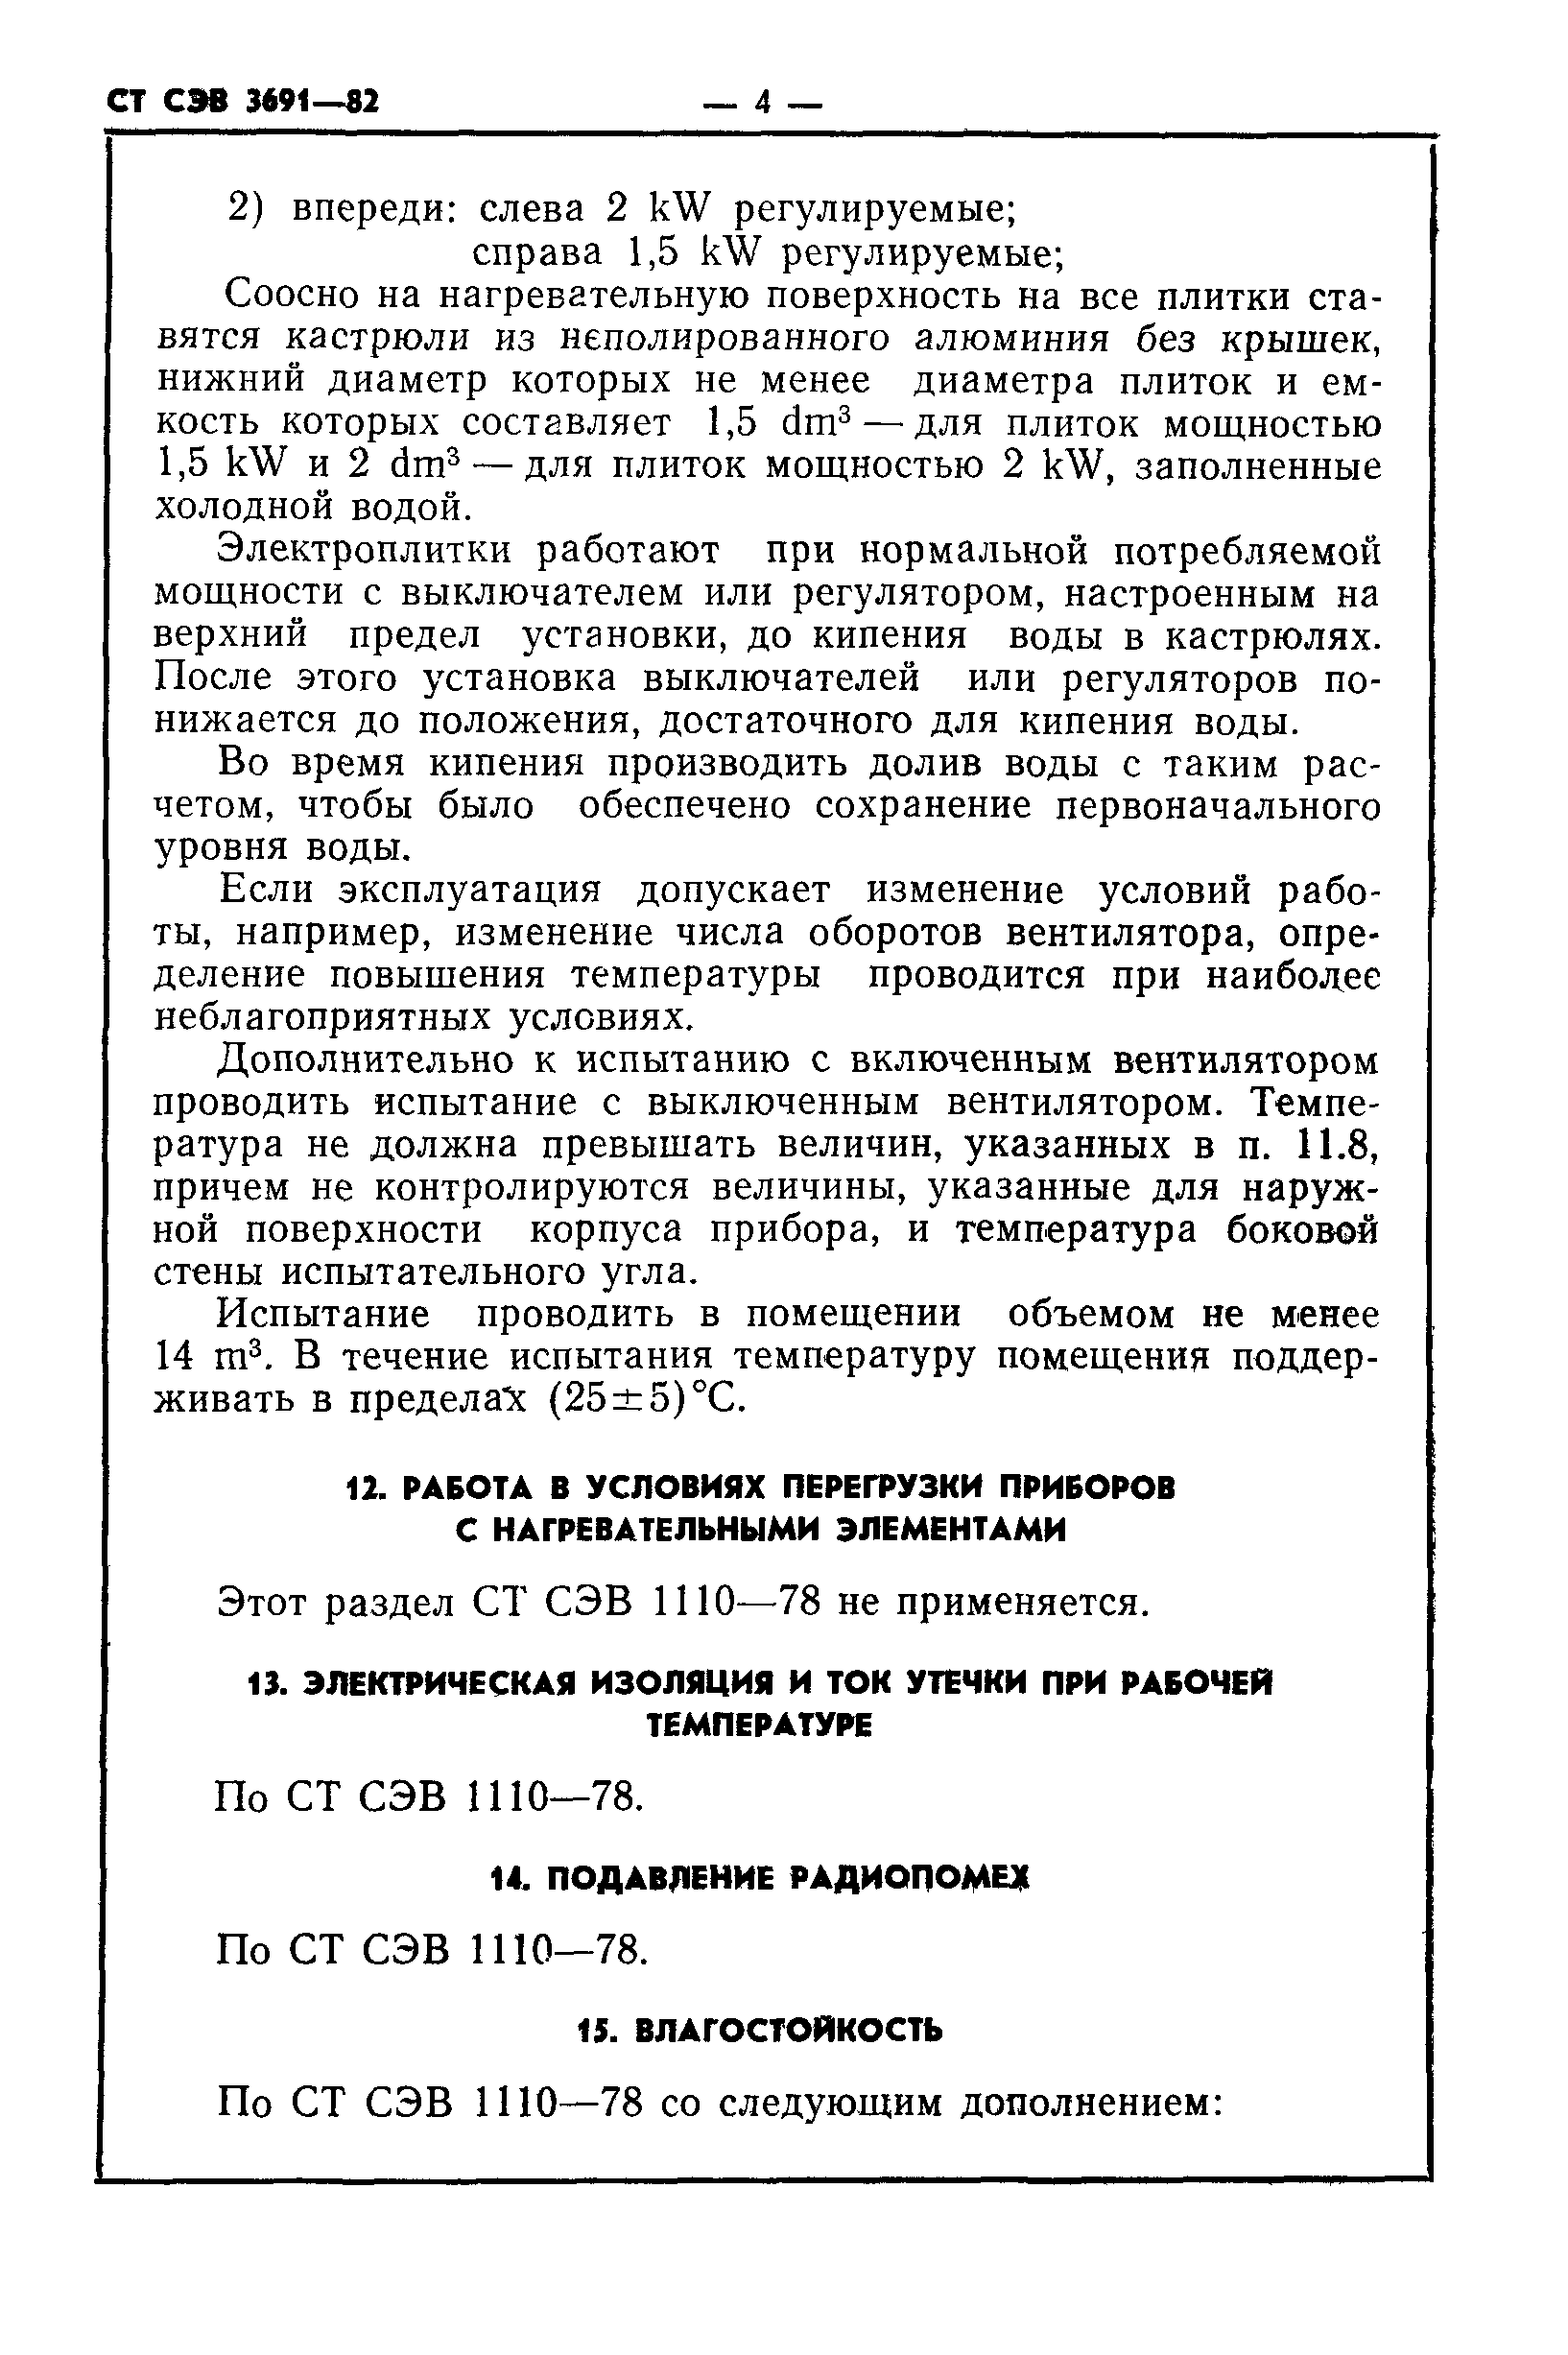 СТ СЭВ 3691-82